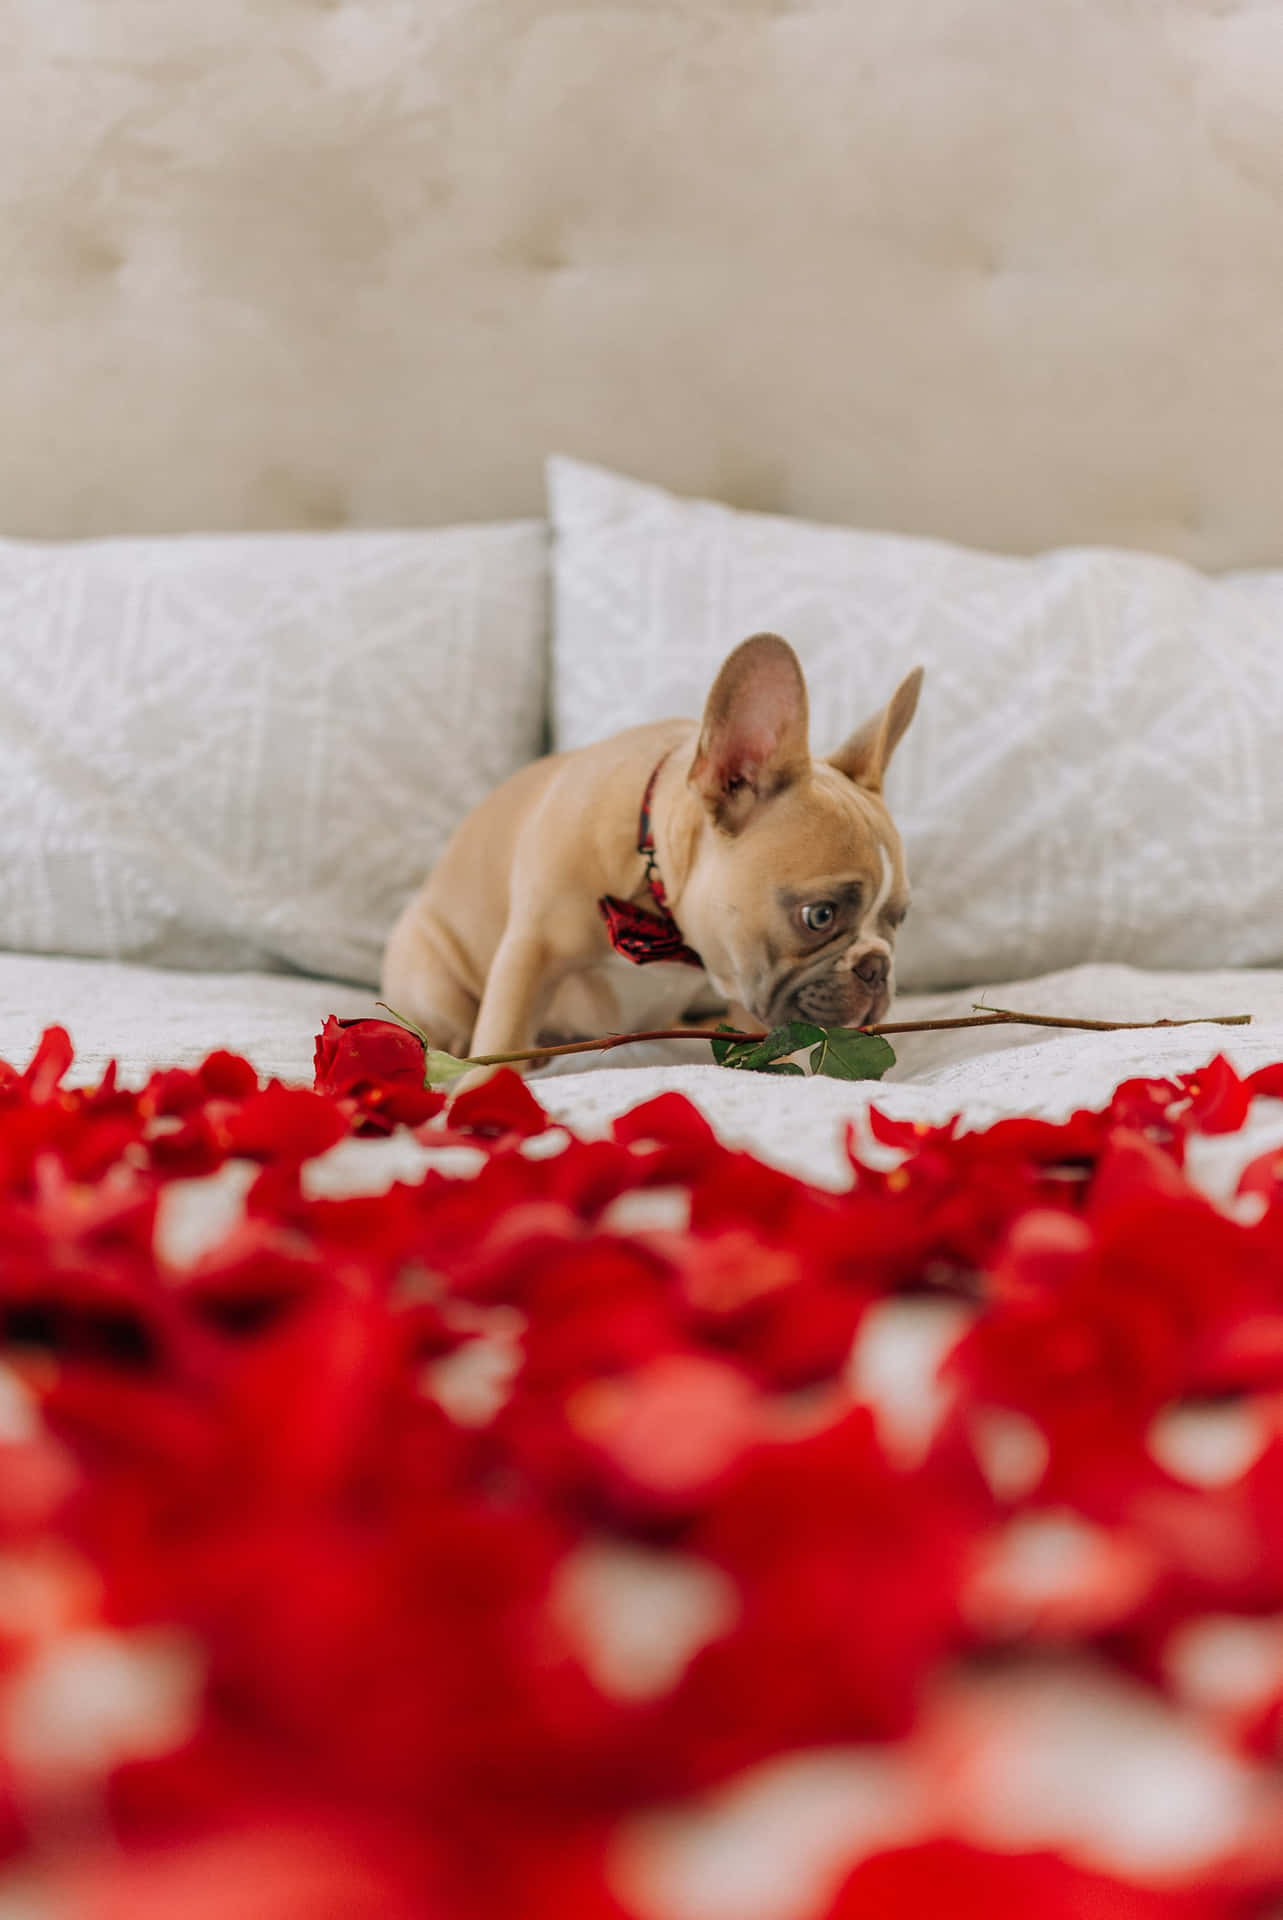 Einfranzösischer Bulldogge, Der Auf Einem Bett Mit Rosenblättern Liegt. Wallpaper